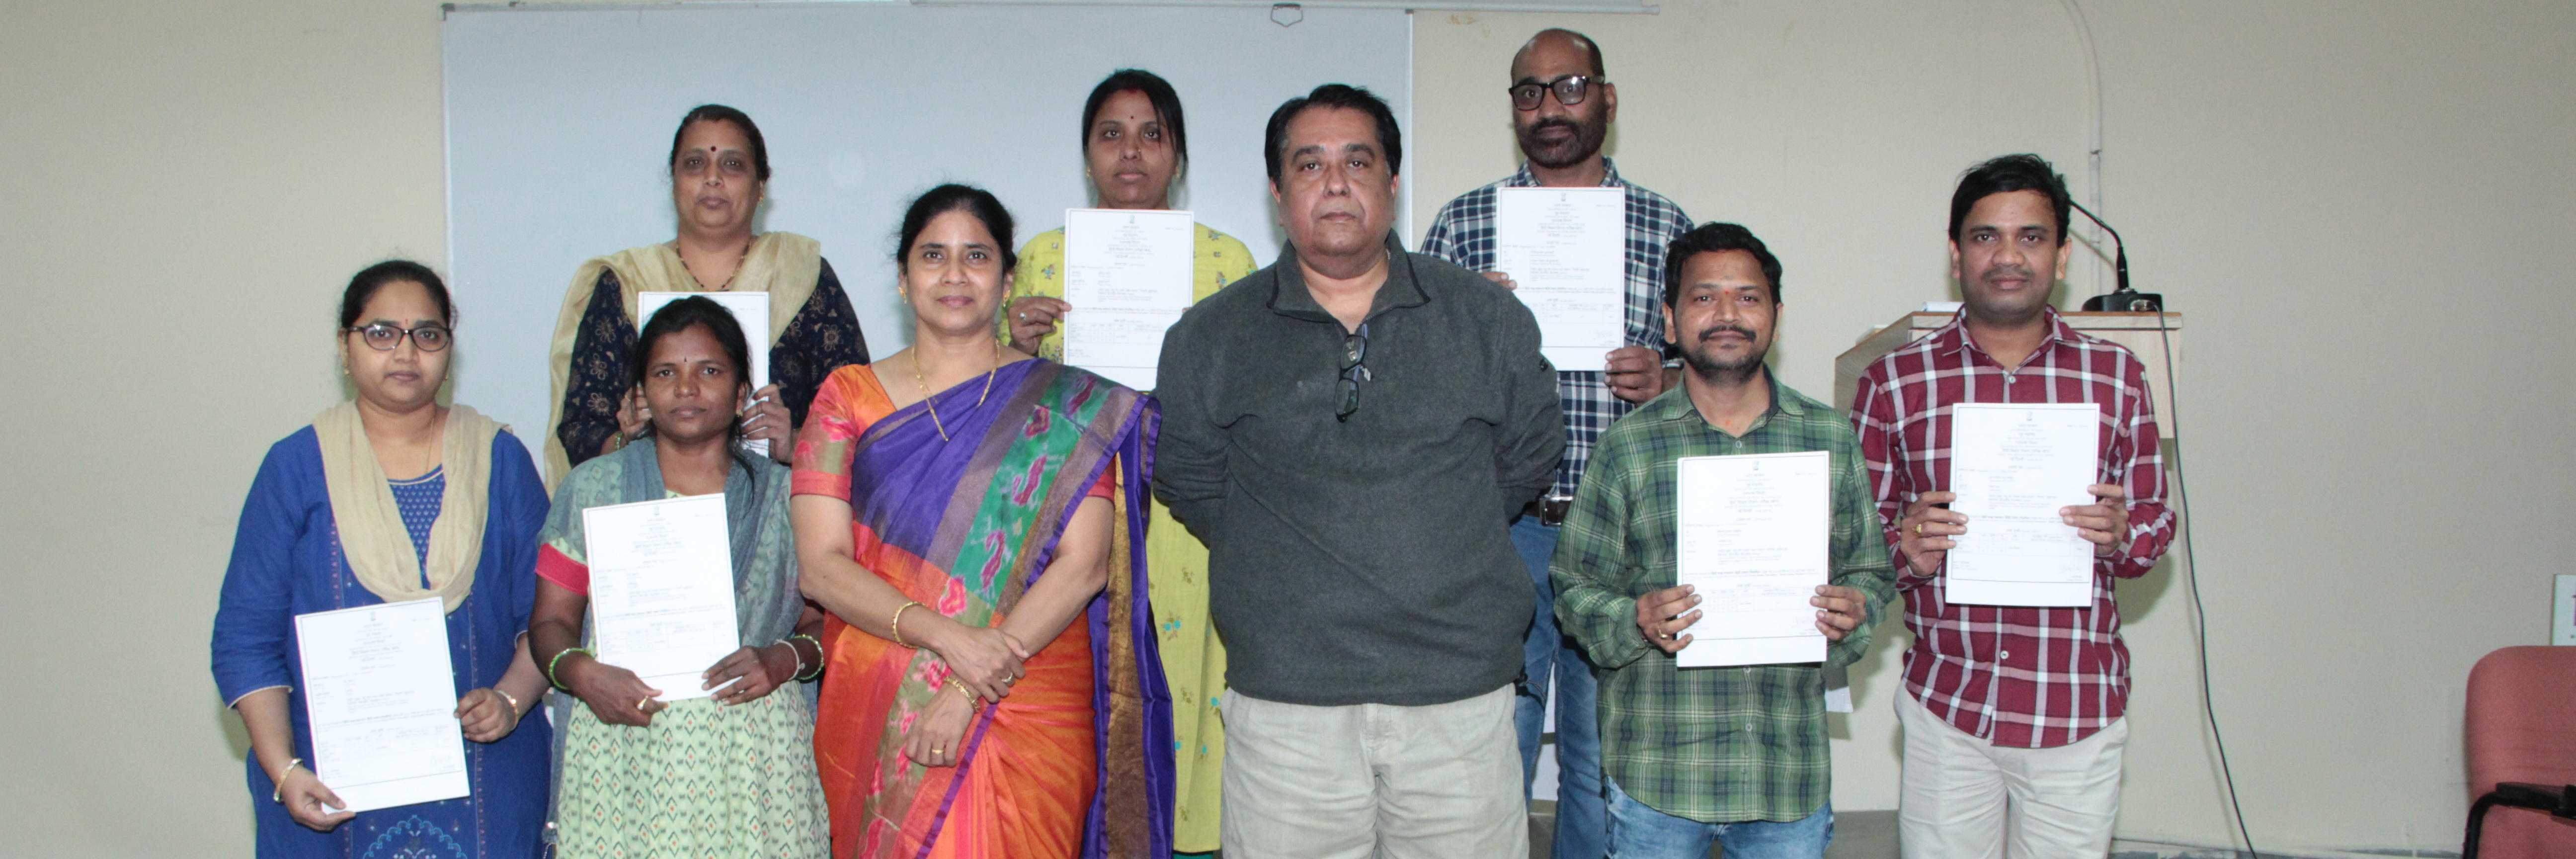 ni-msme Staff Awarded for Hindi Typewriting